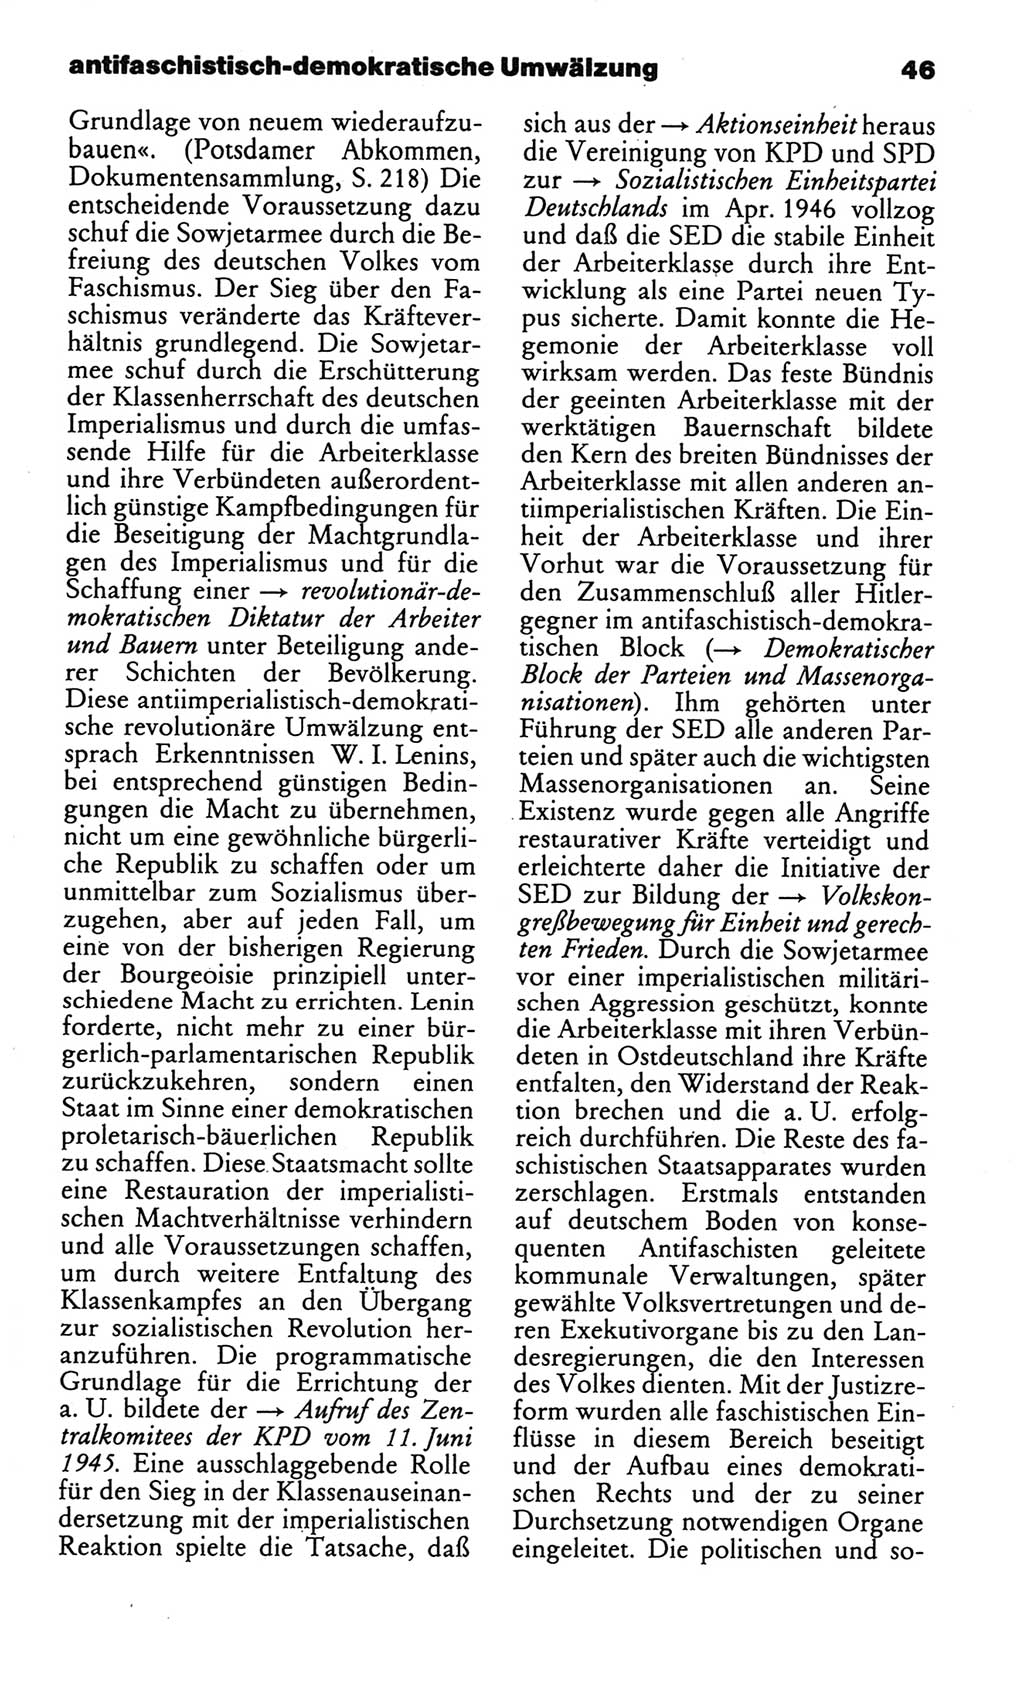 Kleines politisches Wörterbuch [Deutsche Demokratische Republik (DDR)] 1986, Seite 46 (Kl. pol. Wb. DDR 1986, S. 46)